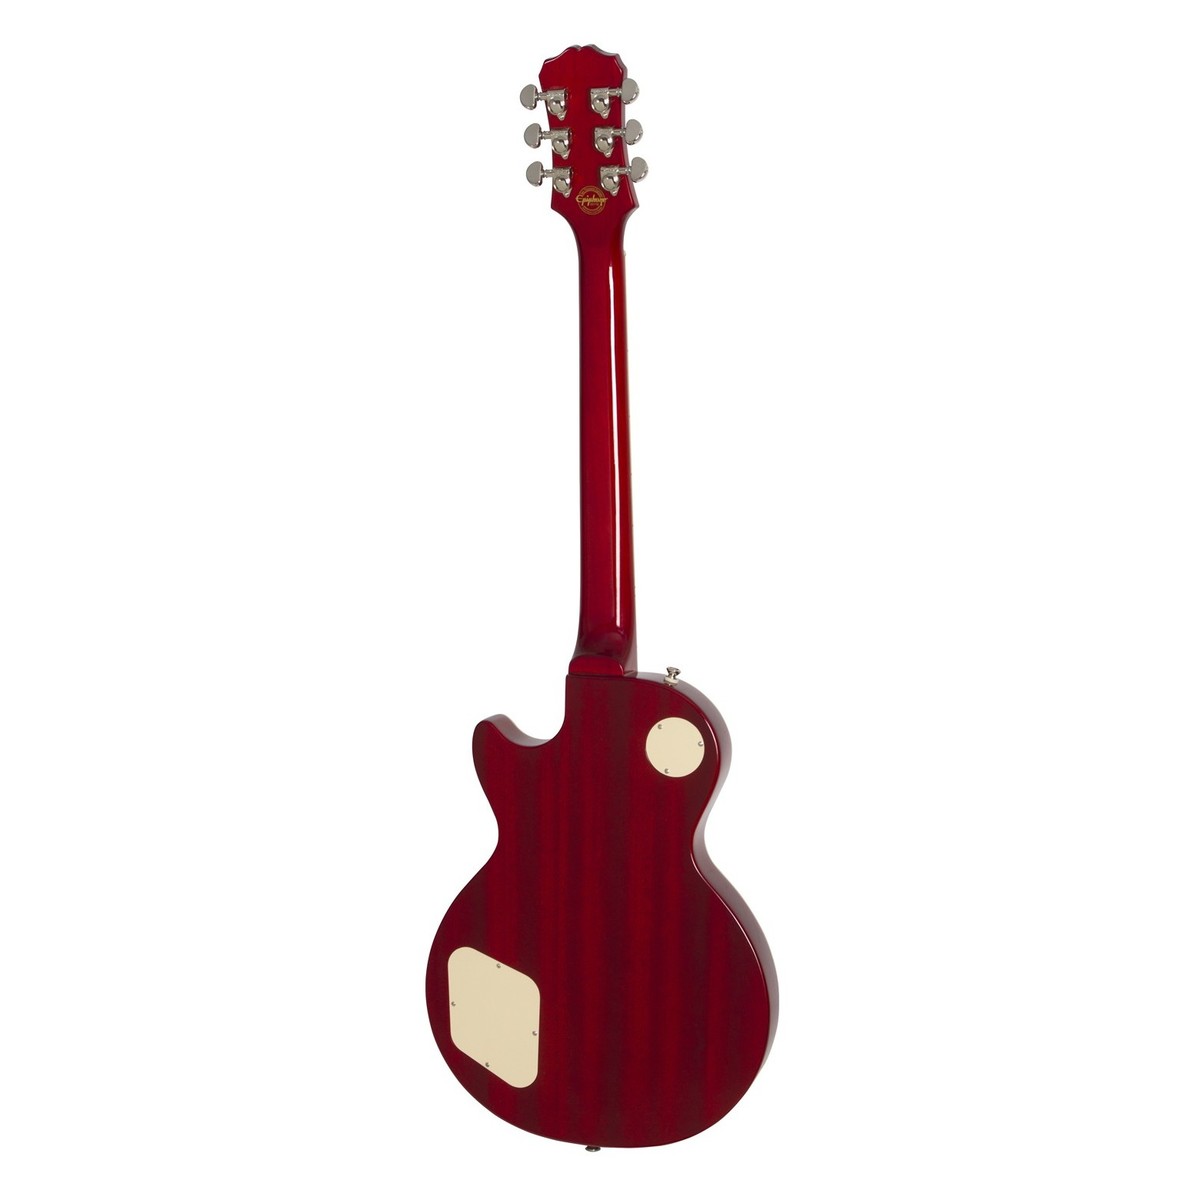 Epiphone Les Paul Standard Hh Ht Pf - Faded Cherry Sunburst - Guitarra eléctrica de corte único. - Variation 1